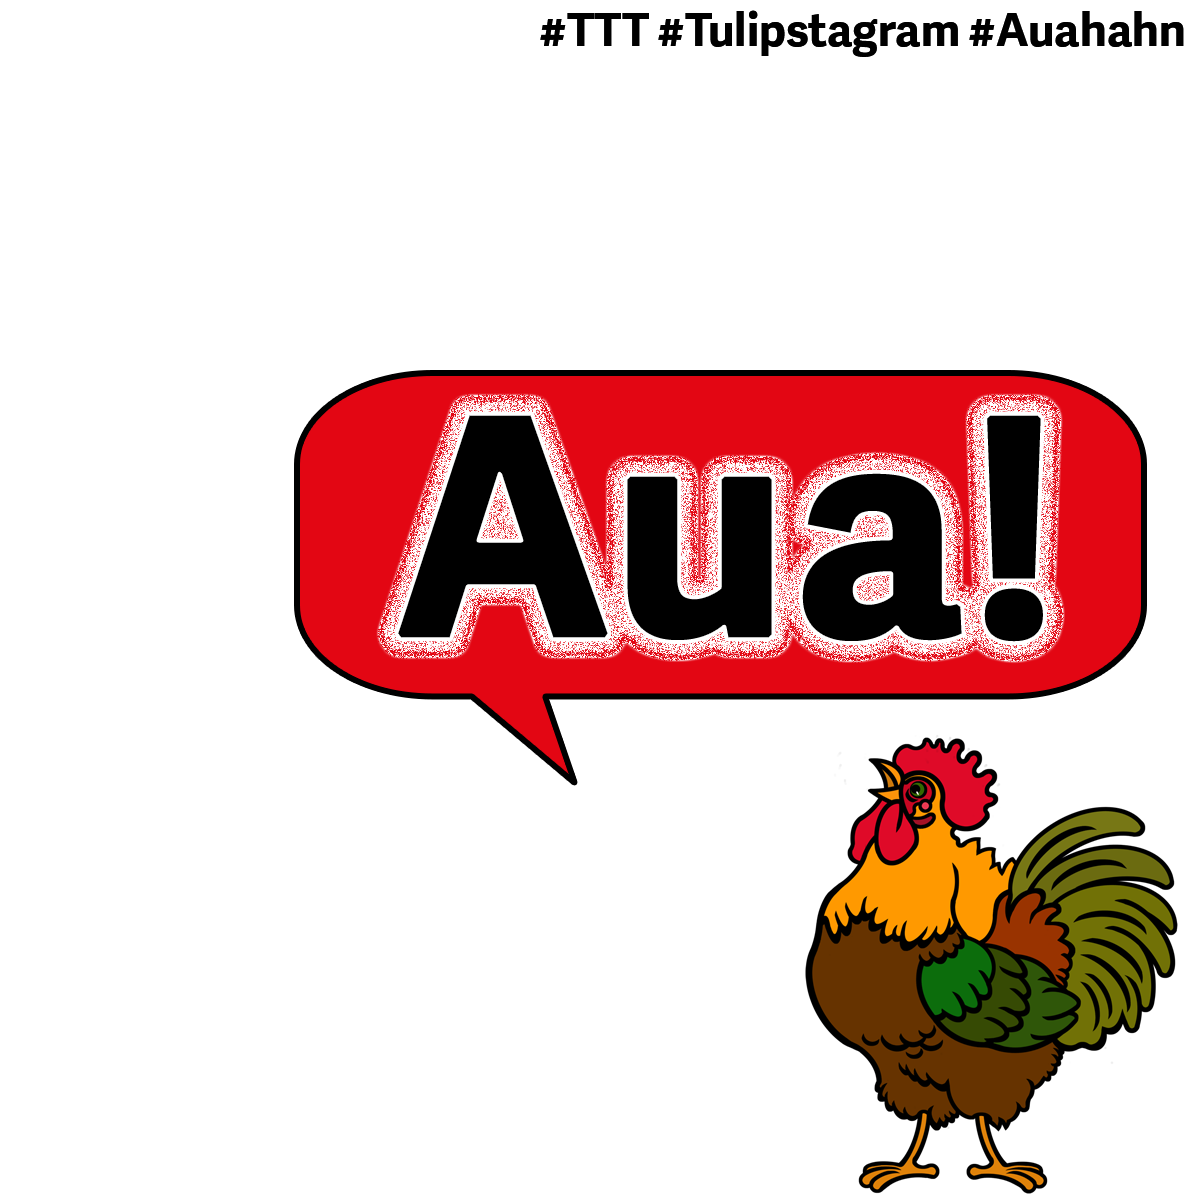 Der #Auahahn #TTT #Tulipstagram